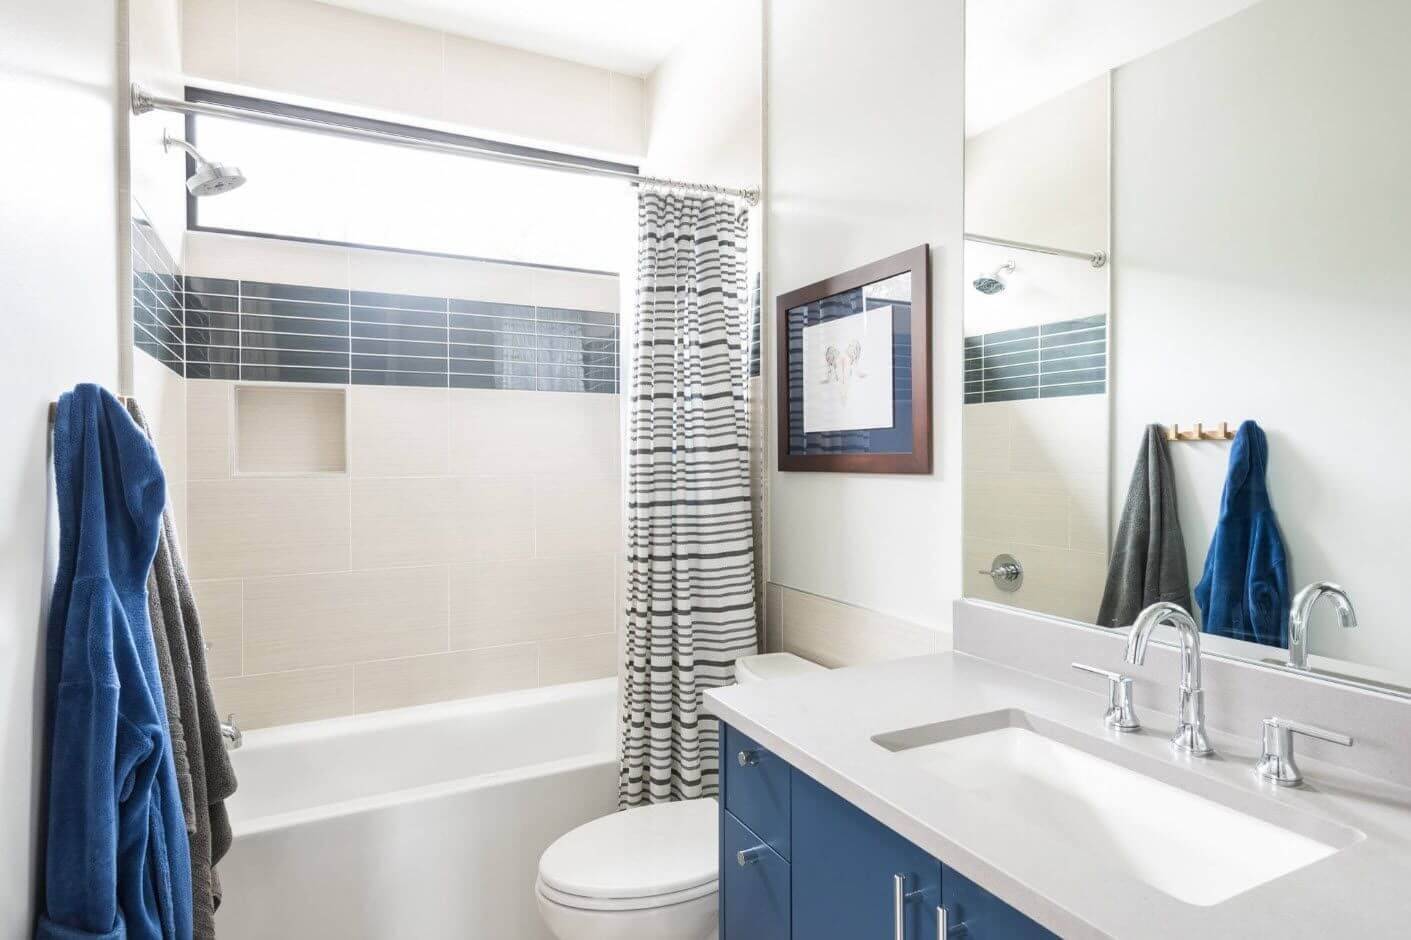 Ванная 4 кв. м.: стильный дизайнерский интерьер для маленькой ванной комнаты (70 фото)